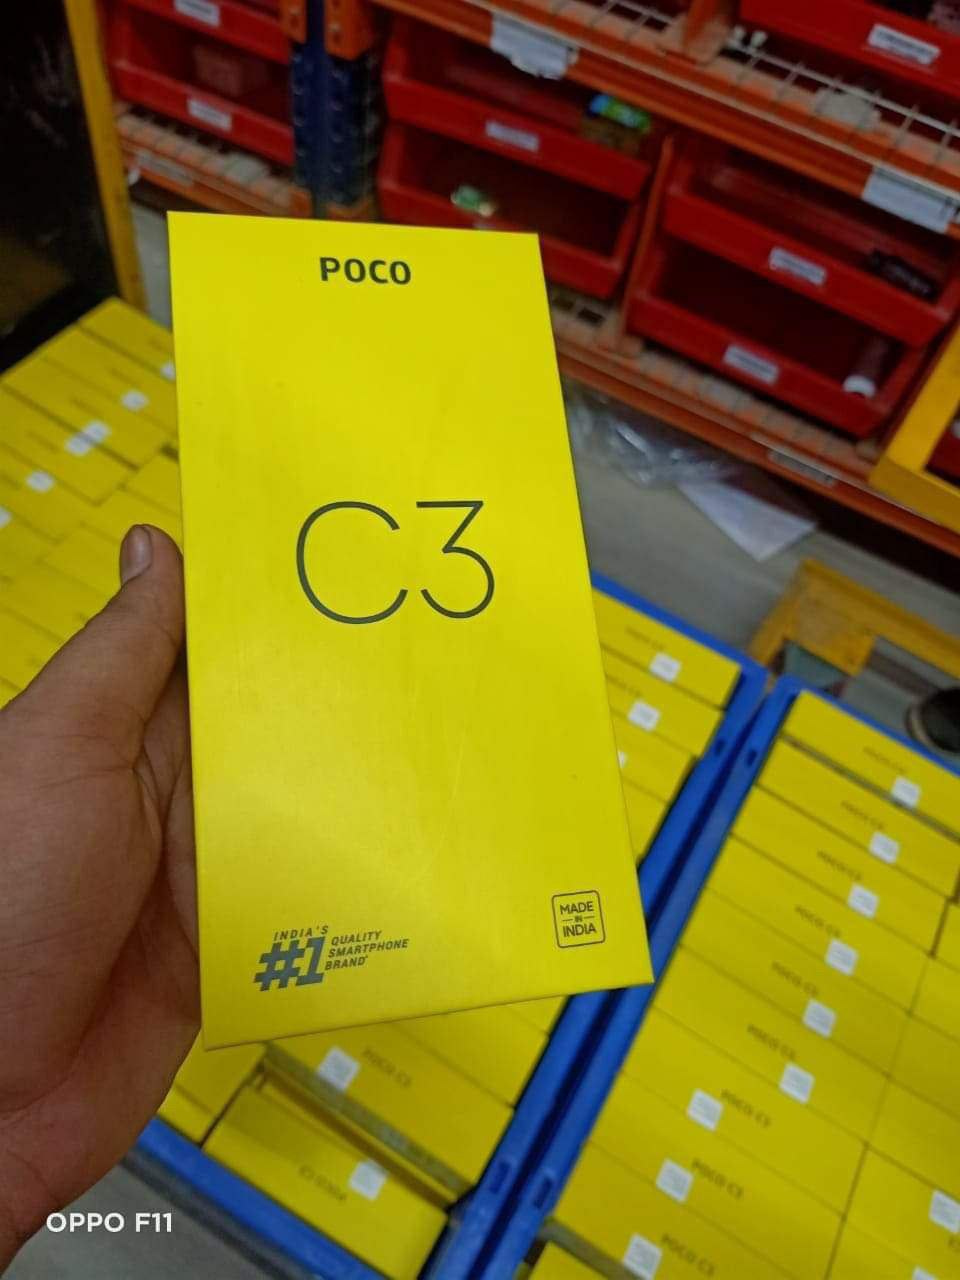 小米POCOC3包裝盒曝光,或為Redmi9C更名版